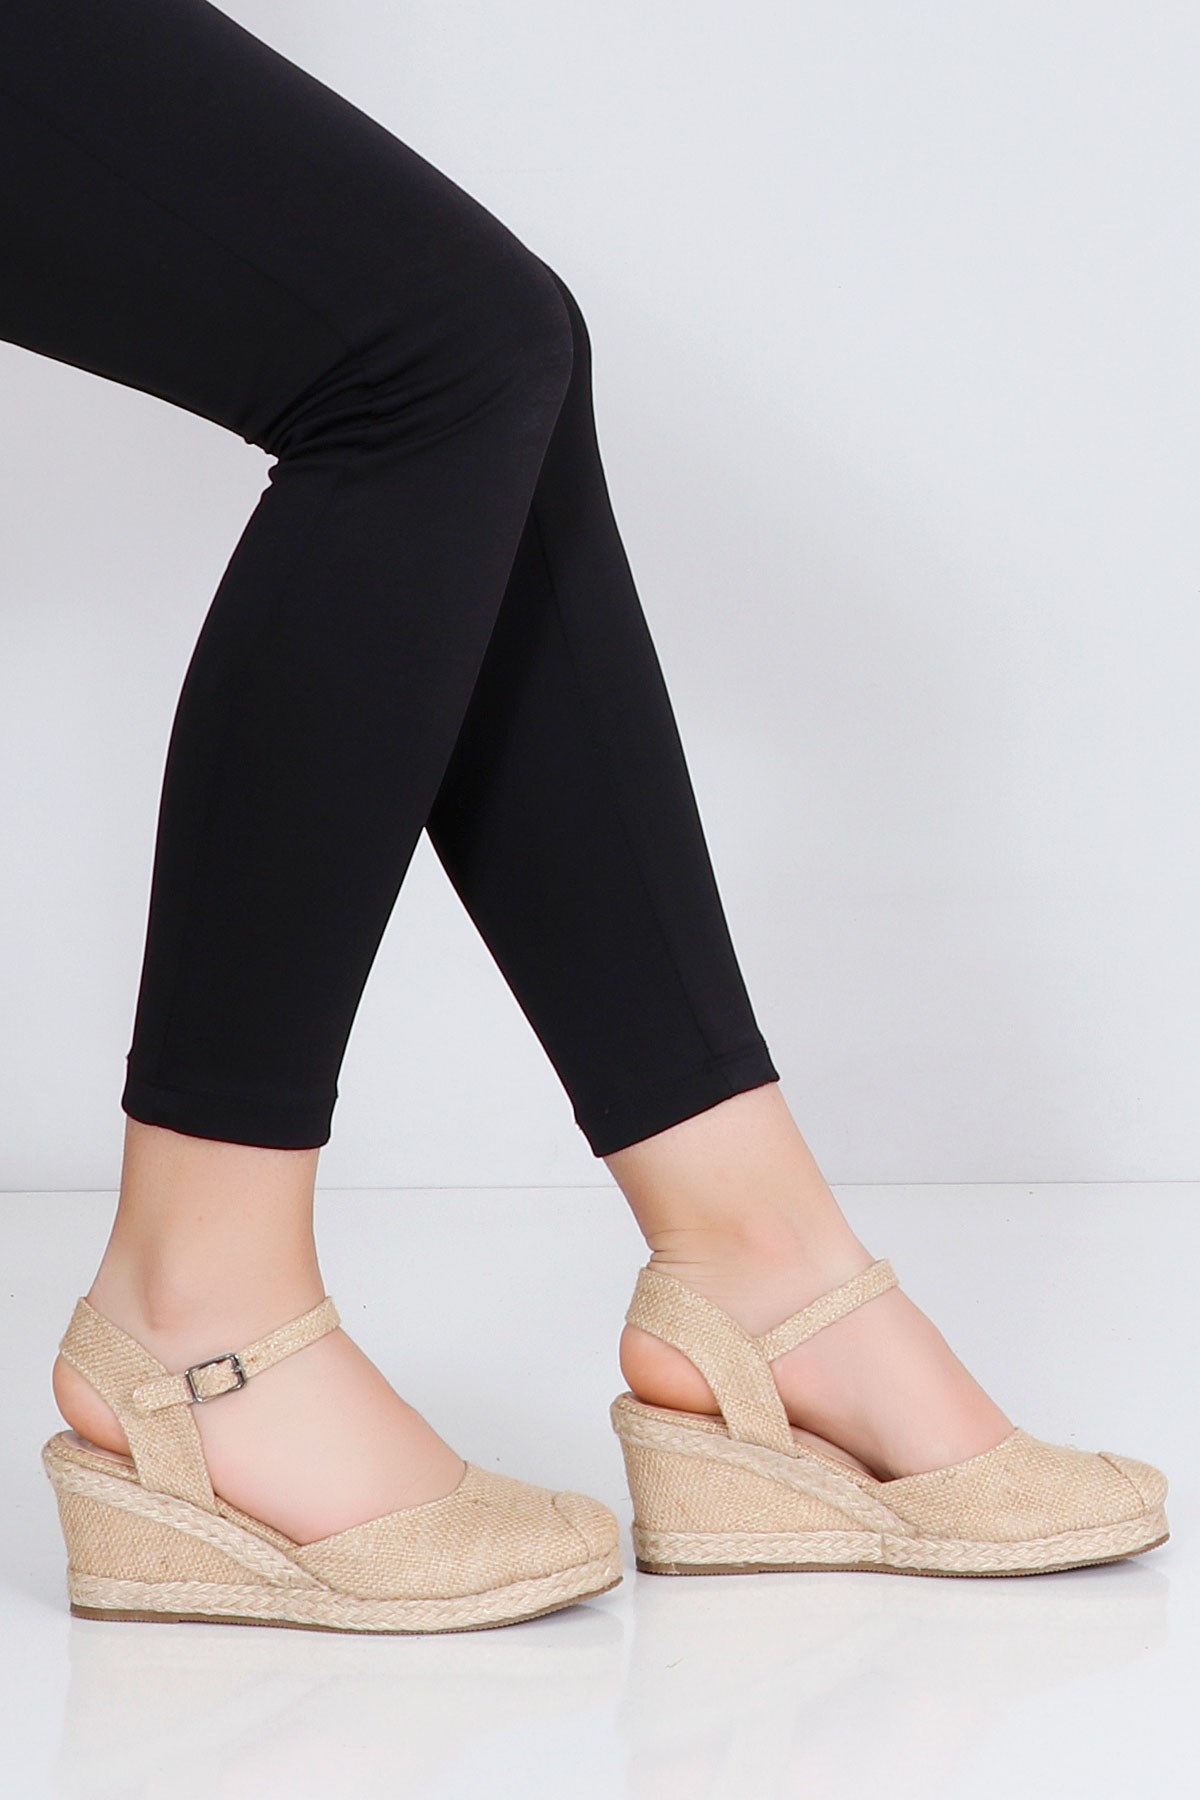 Ten keten Önü Kapalı Dolgu Topuk Kadın Sandalet Hasır 20-3 Fiyatı ve  Modelleri